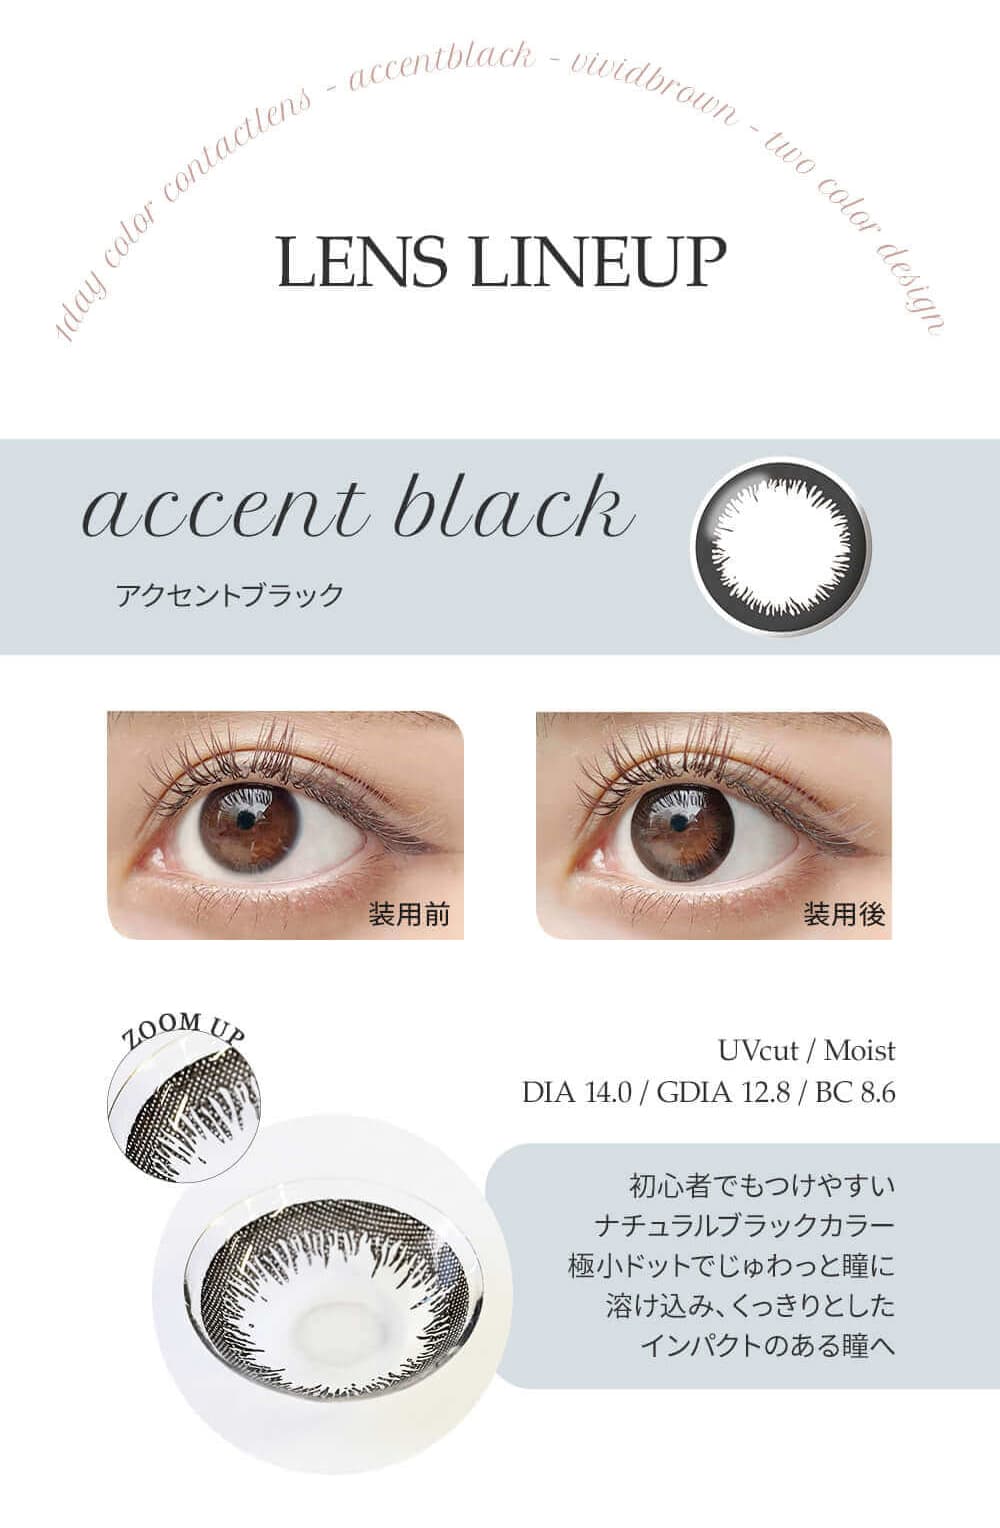 エンジェルアイズワンデーの「アクセントブラック」は透け感のある瞳に馴染むカラー